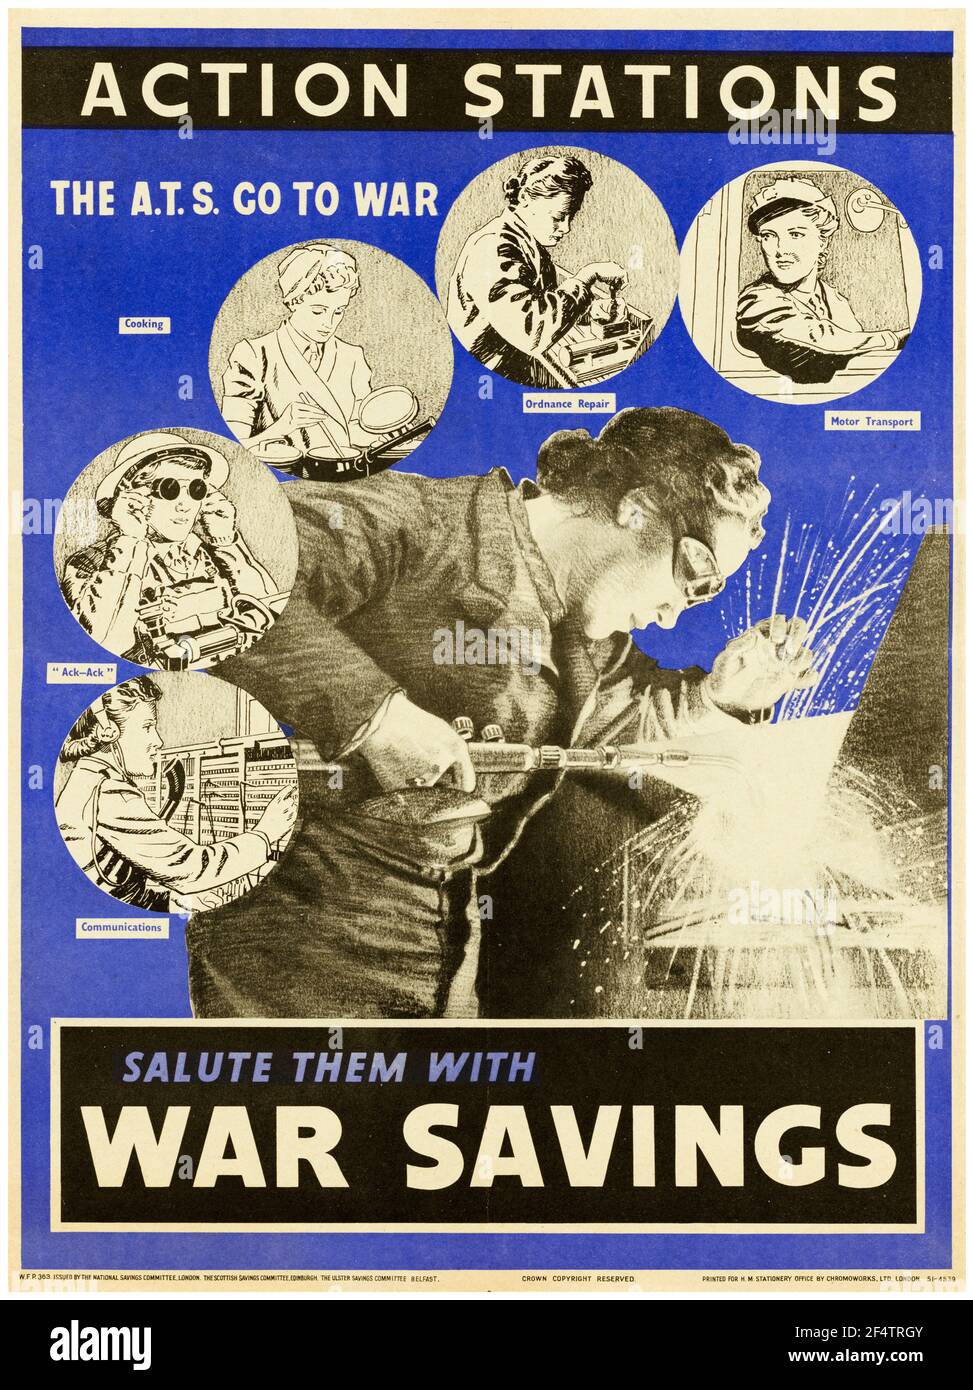 British, WW2 Poster de productividad: Estaciones de acción - el ATS ir a la guerra, la campaña de bonos de ahorro de guerra, 1942-1945 Foto de stock